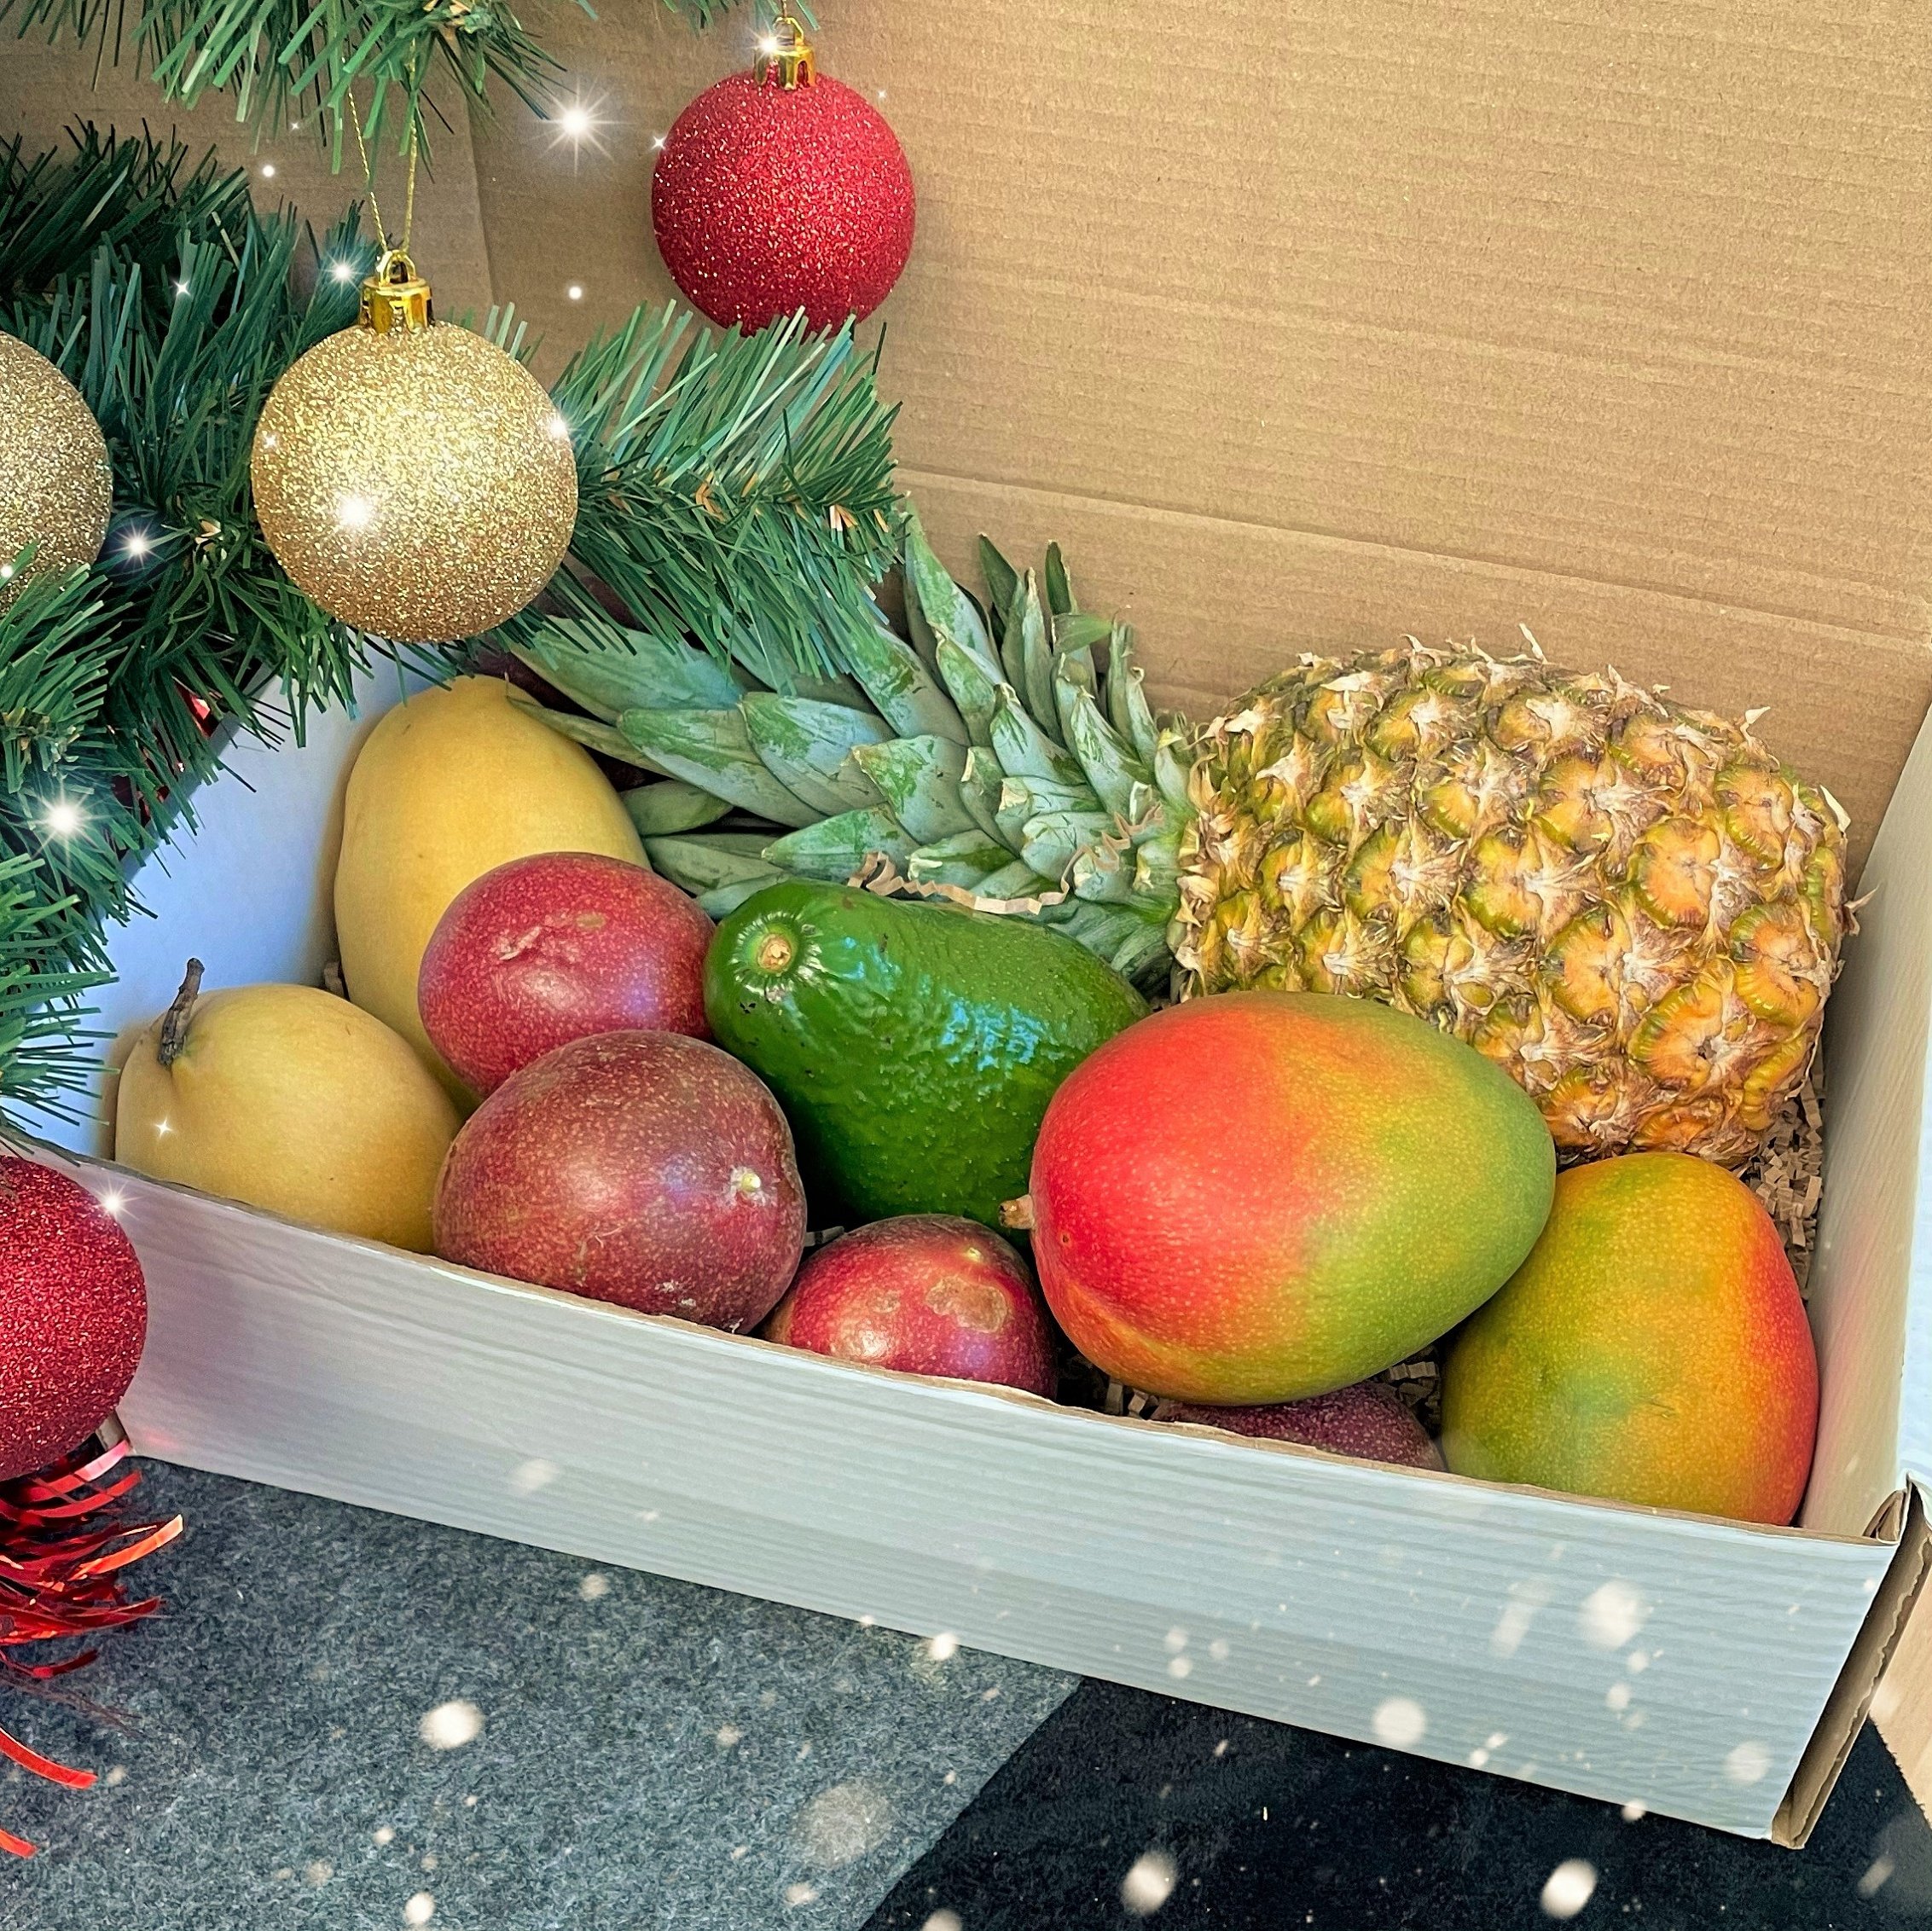 Фрукты нового года. Новогодние фрукты. Экзотические фрукты на новогоднем столе. Фрукты на НГ. Новогодние наборы фруктов.